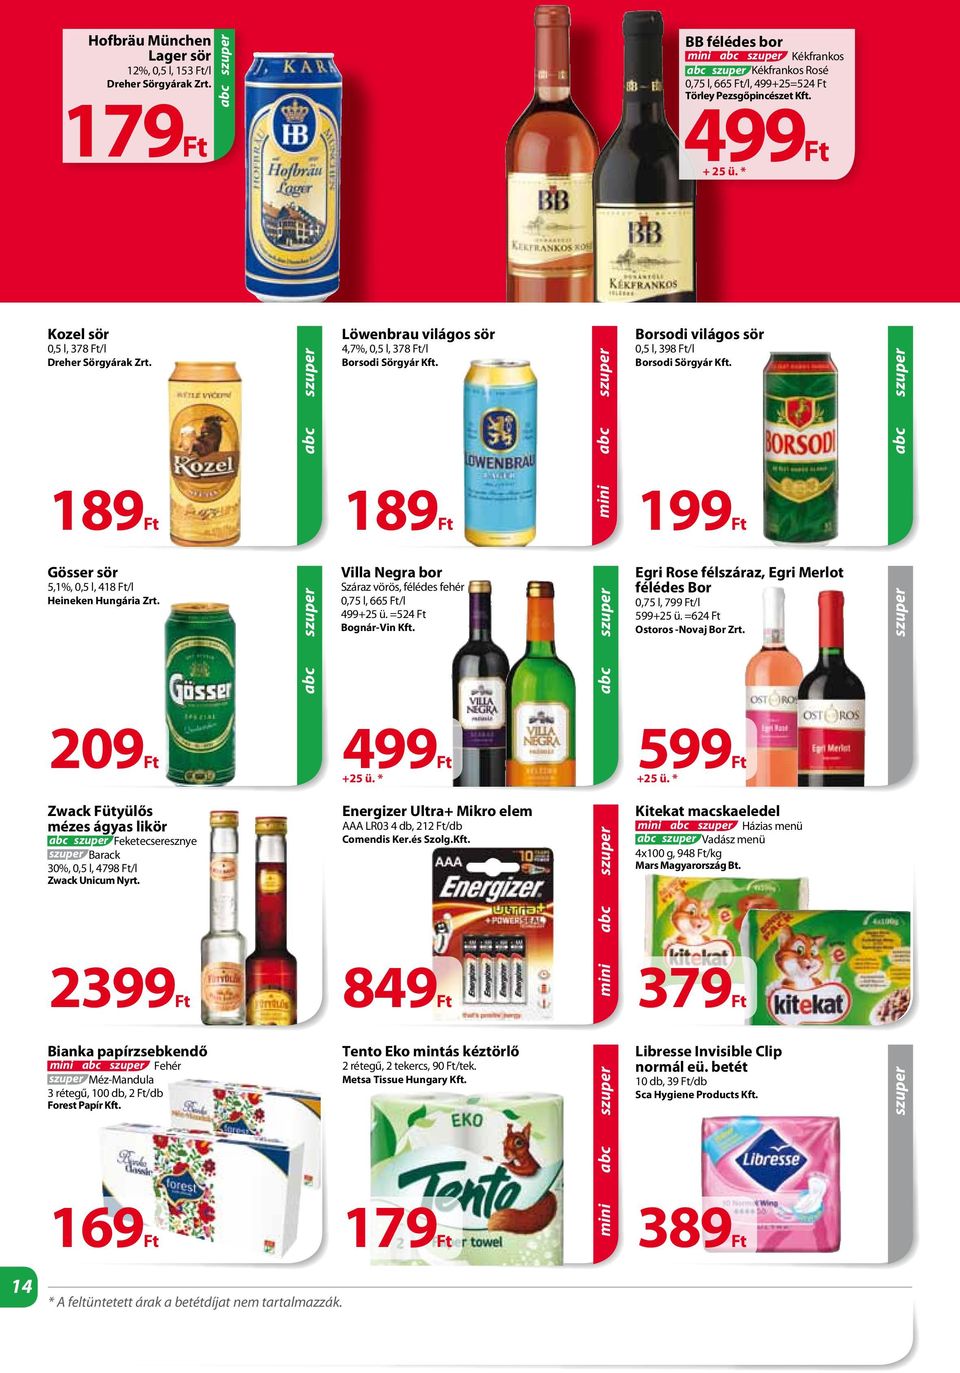 Gösser sör 5,1%, 0,5 l, 418 /l Heineken Hungária Zrt. Villa Negra bor Száraz vörös, félédes fehér 0,75 l, 665 /l 499+25 ü. =524 Bognár-Vin Kft.